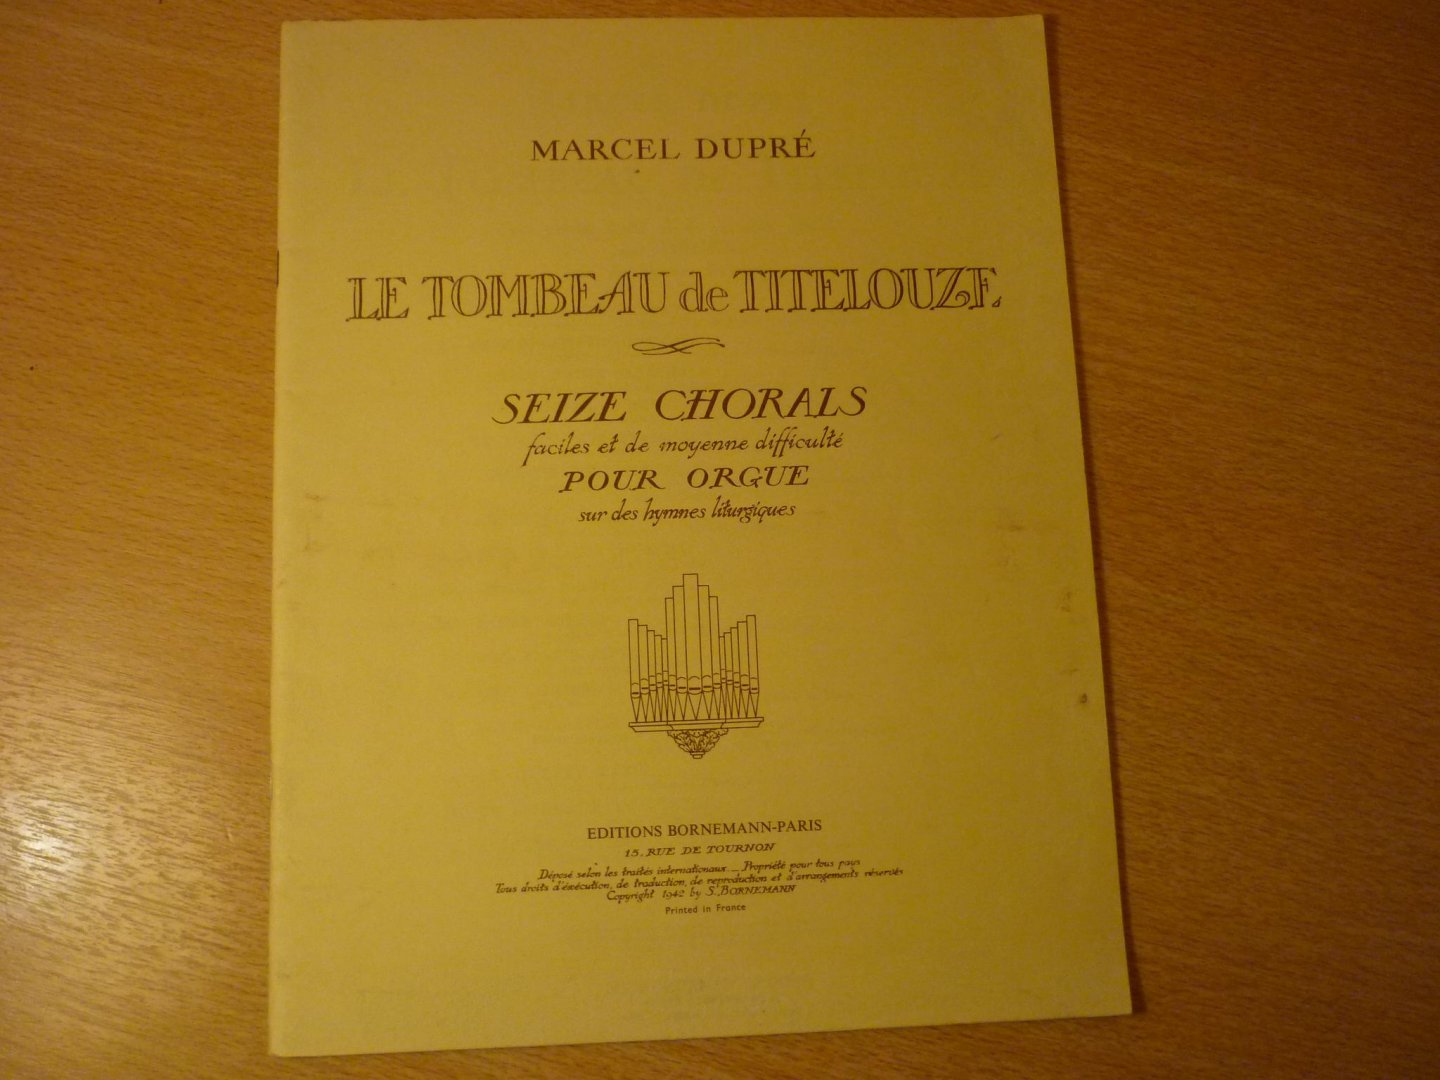 Dupré; Marcel - Le tombeau de titelouze; Seize chorals faciles, et de moyenne difficulte pour orgue; sur des hymnes litergiques